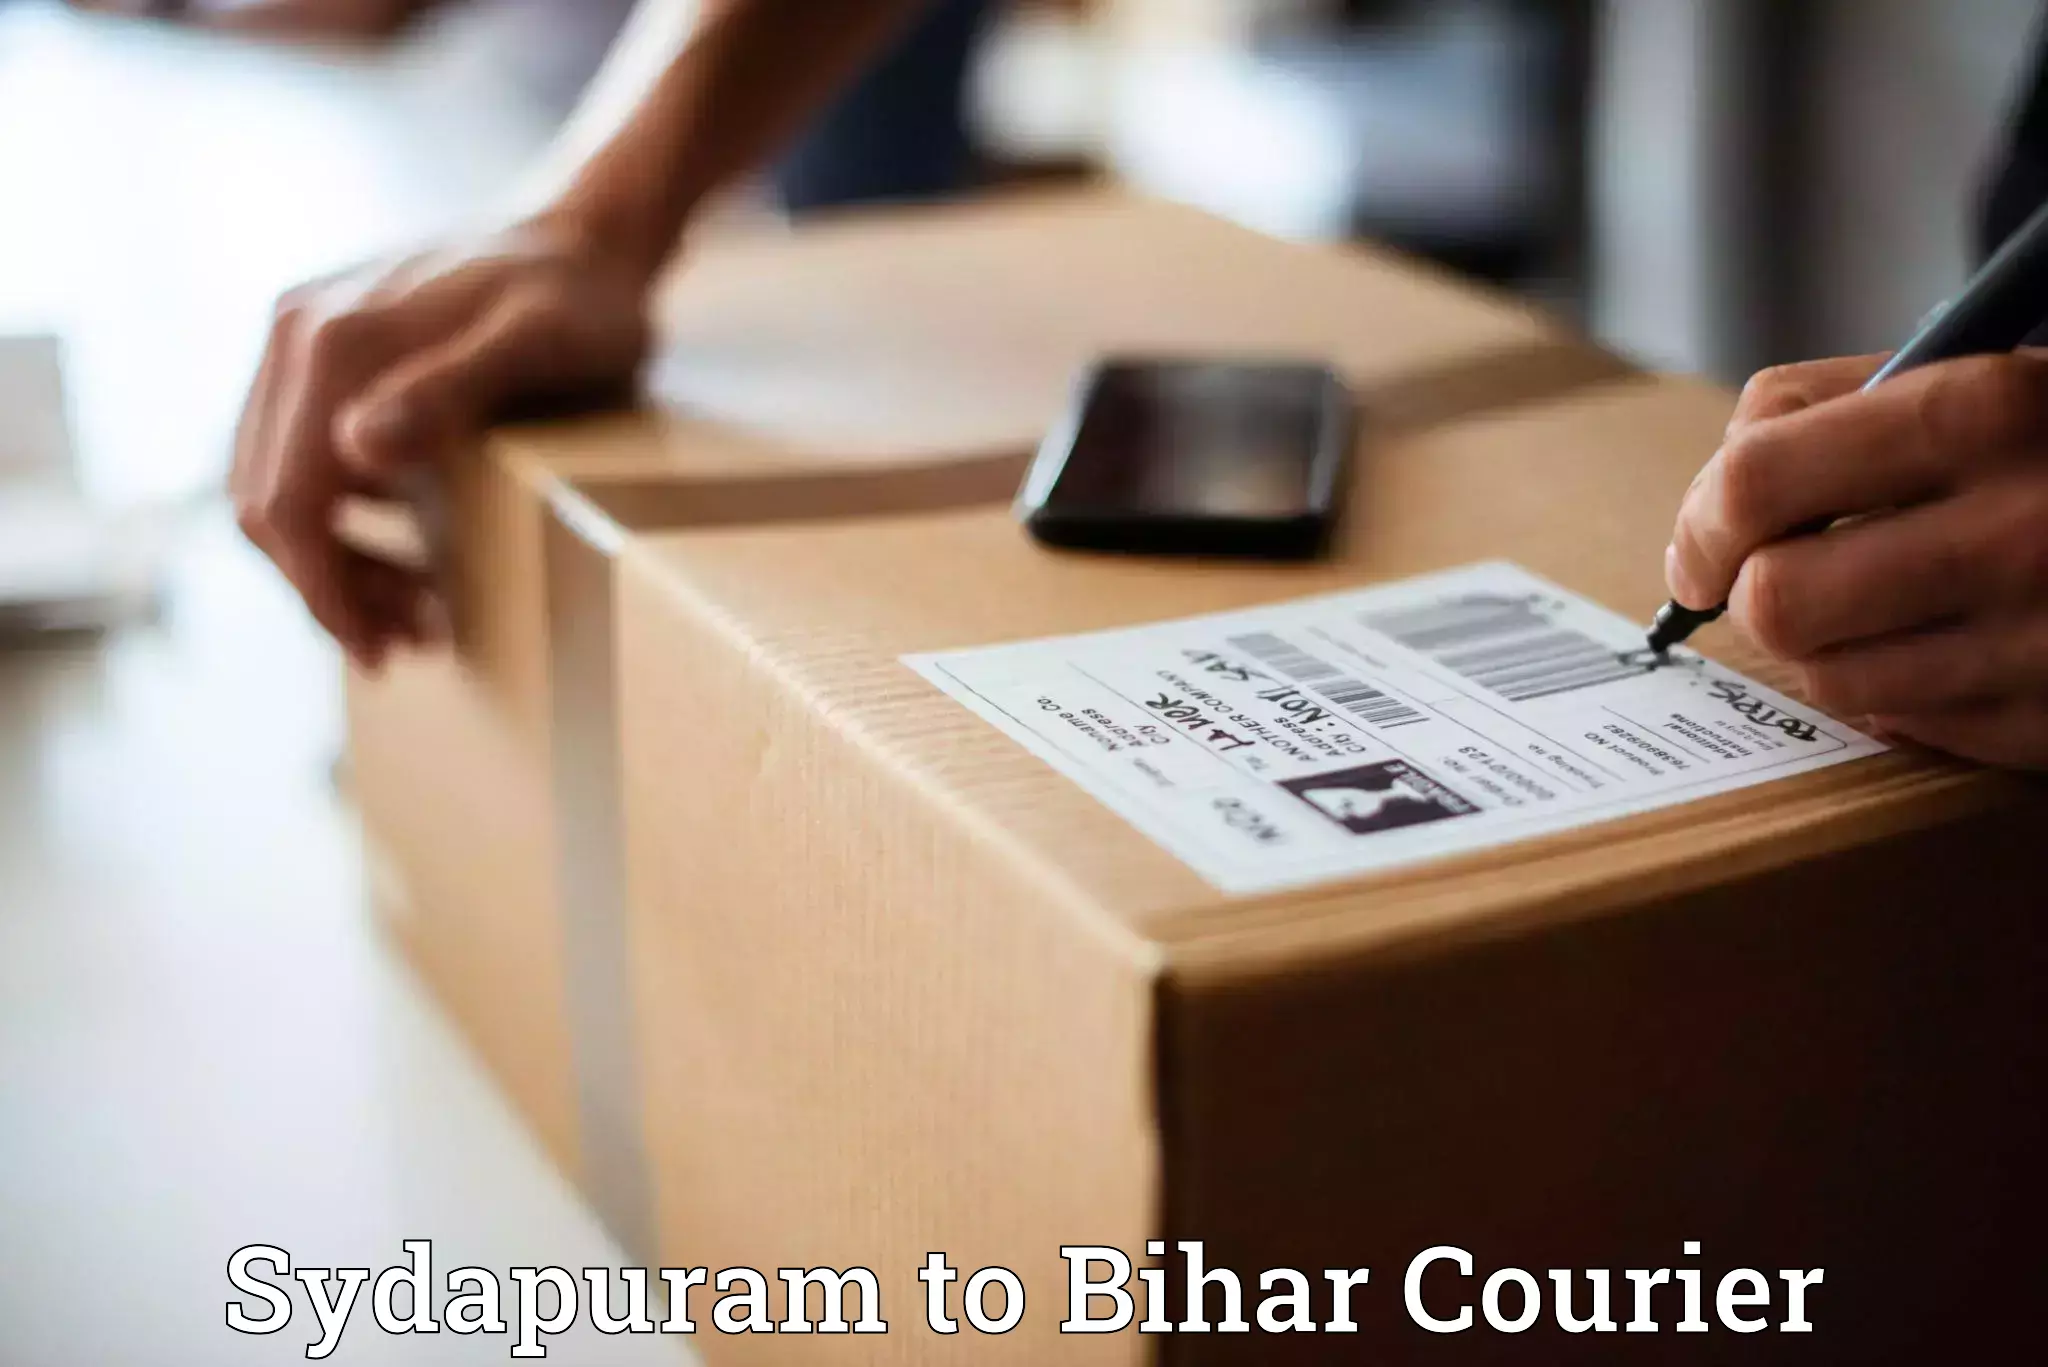 User-friendly courier app Sydapuram to Nalanda